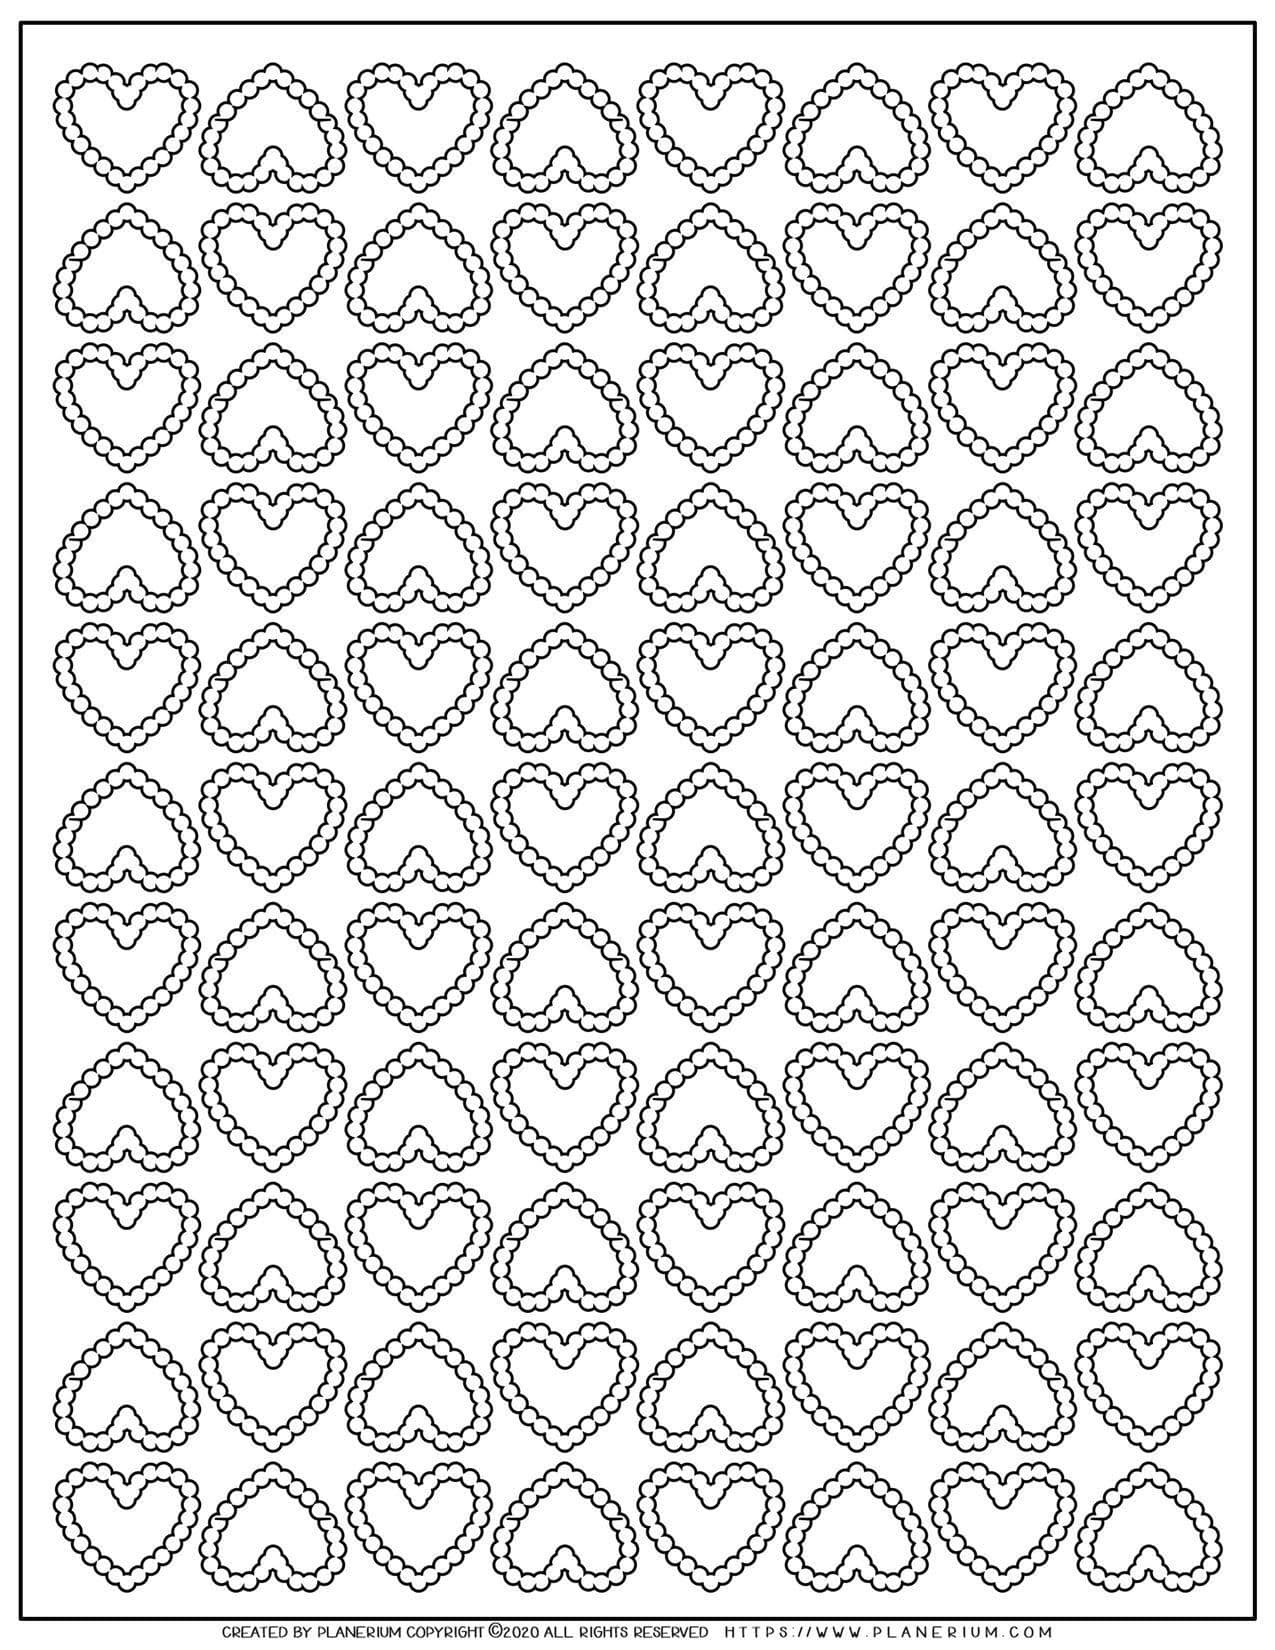 Heart Pattern | Planerium